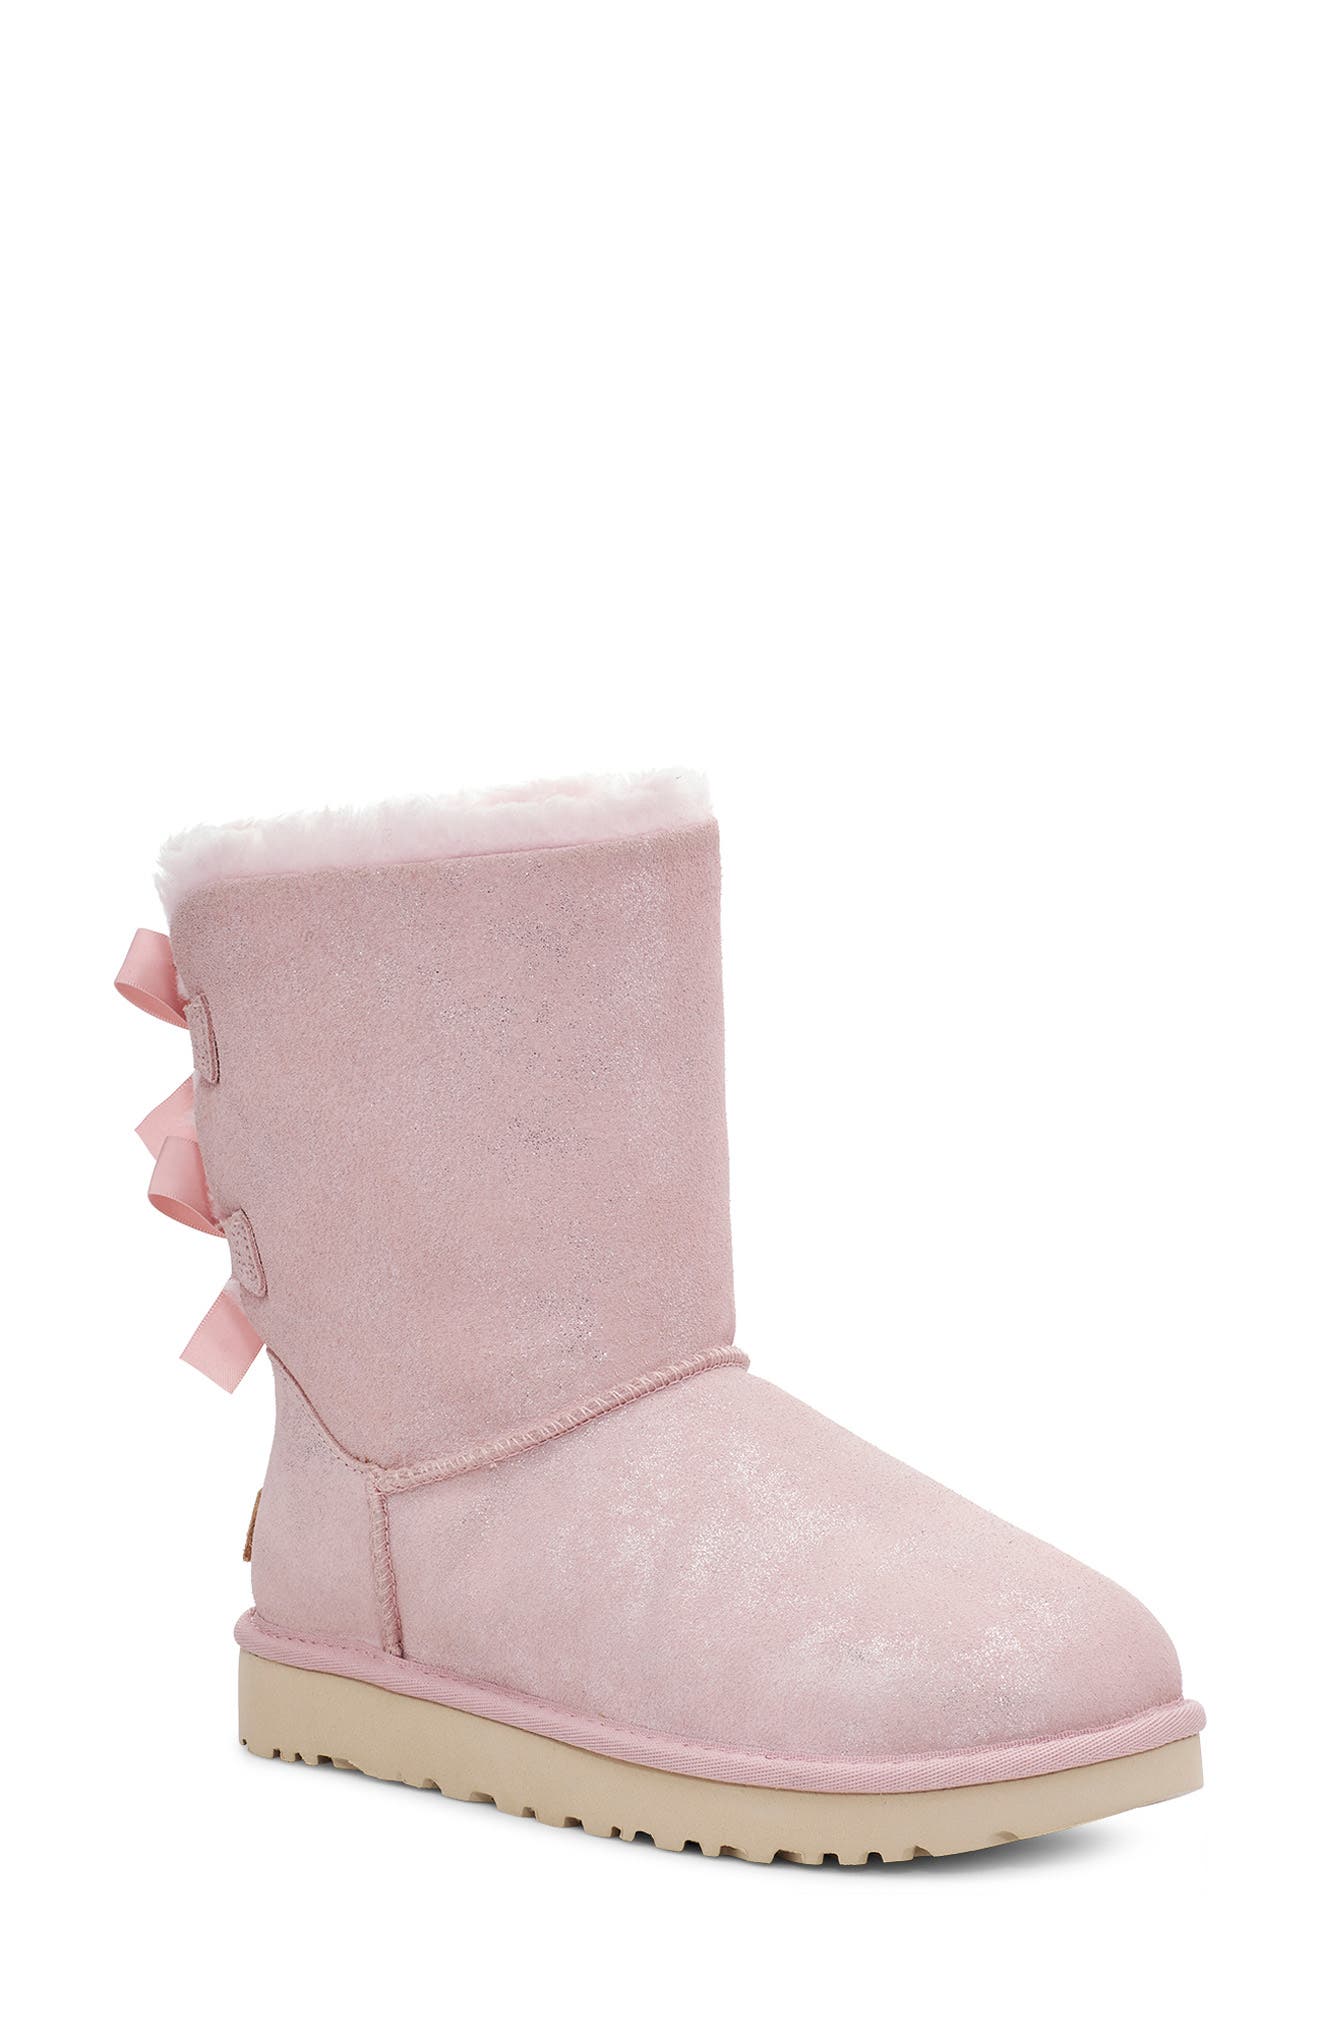 light pink boots women's